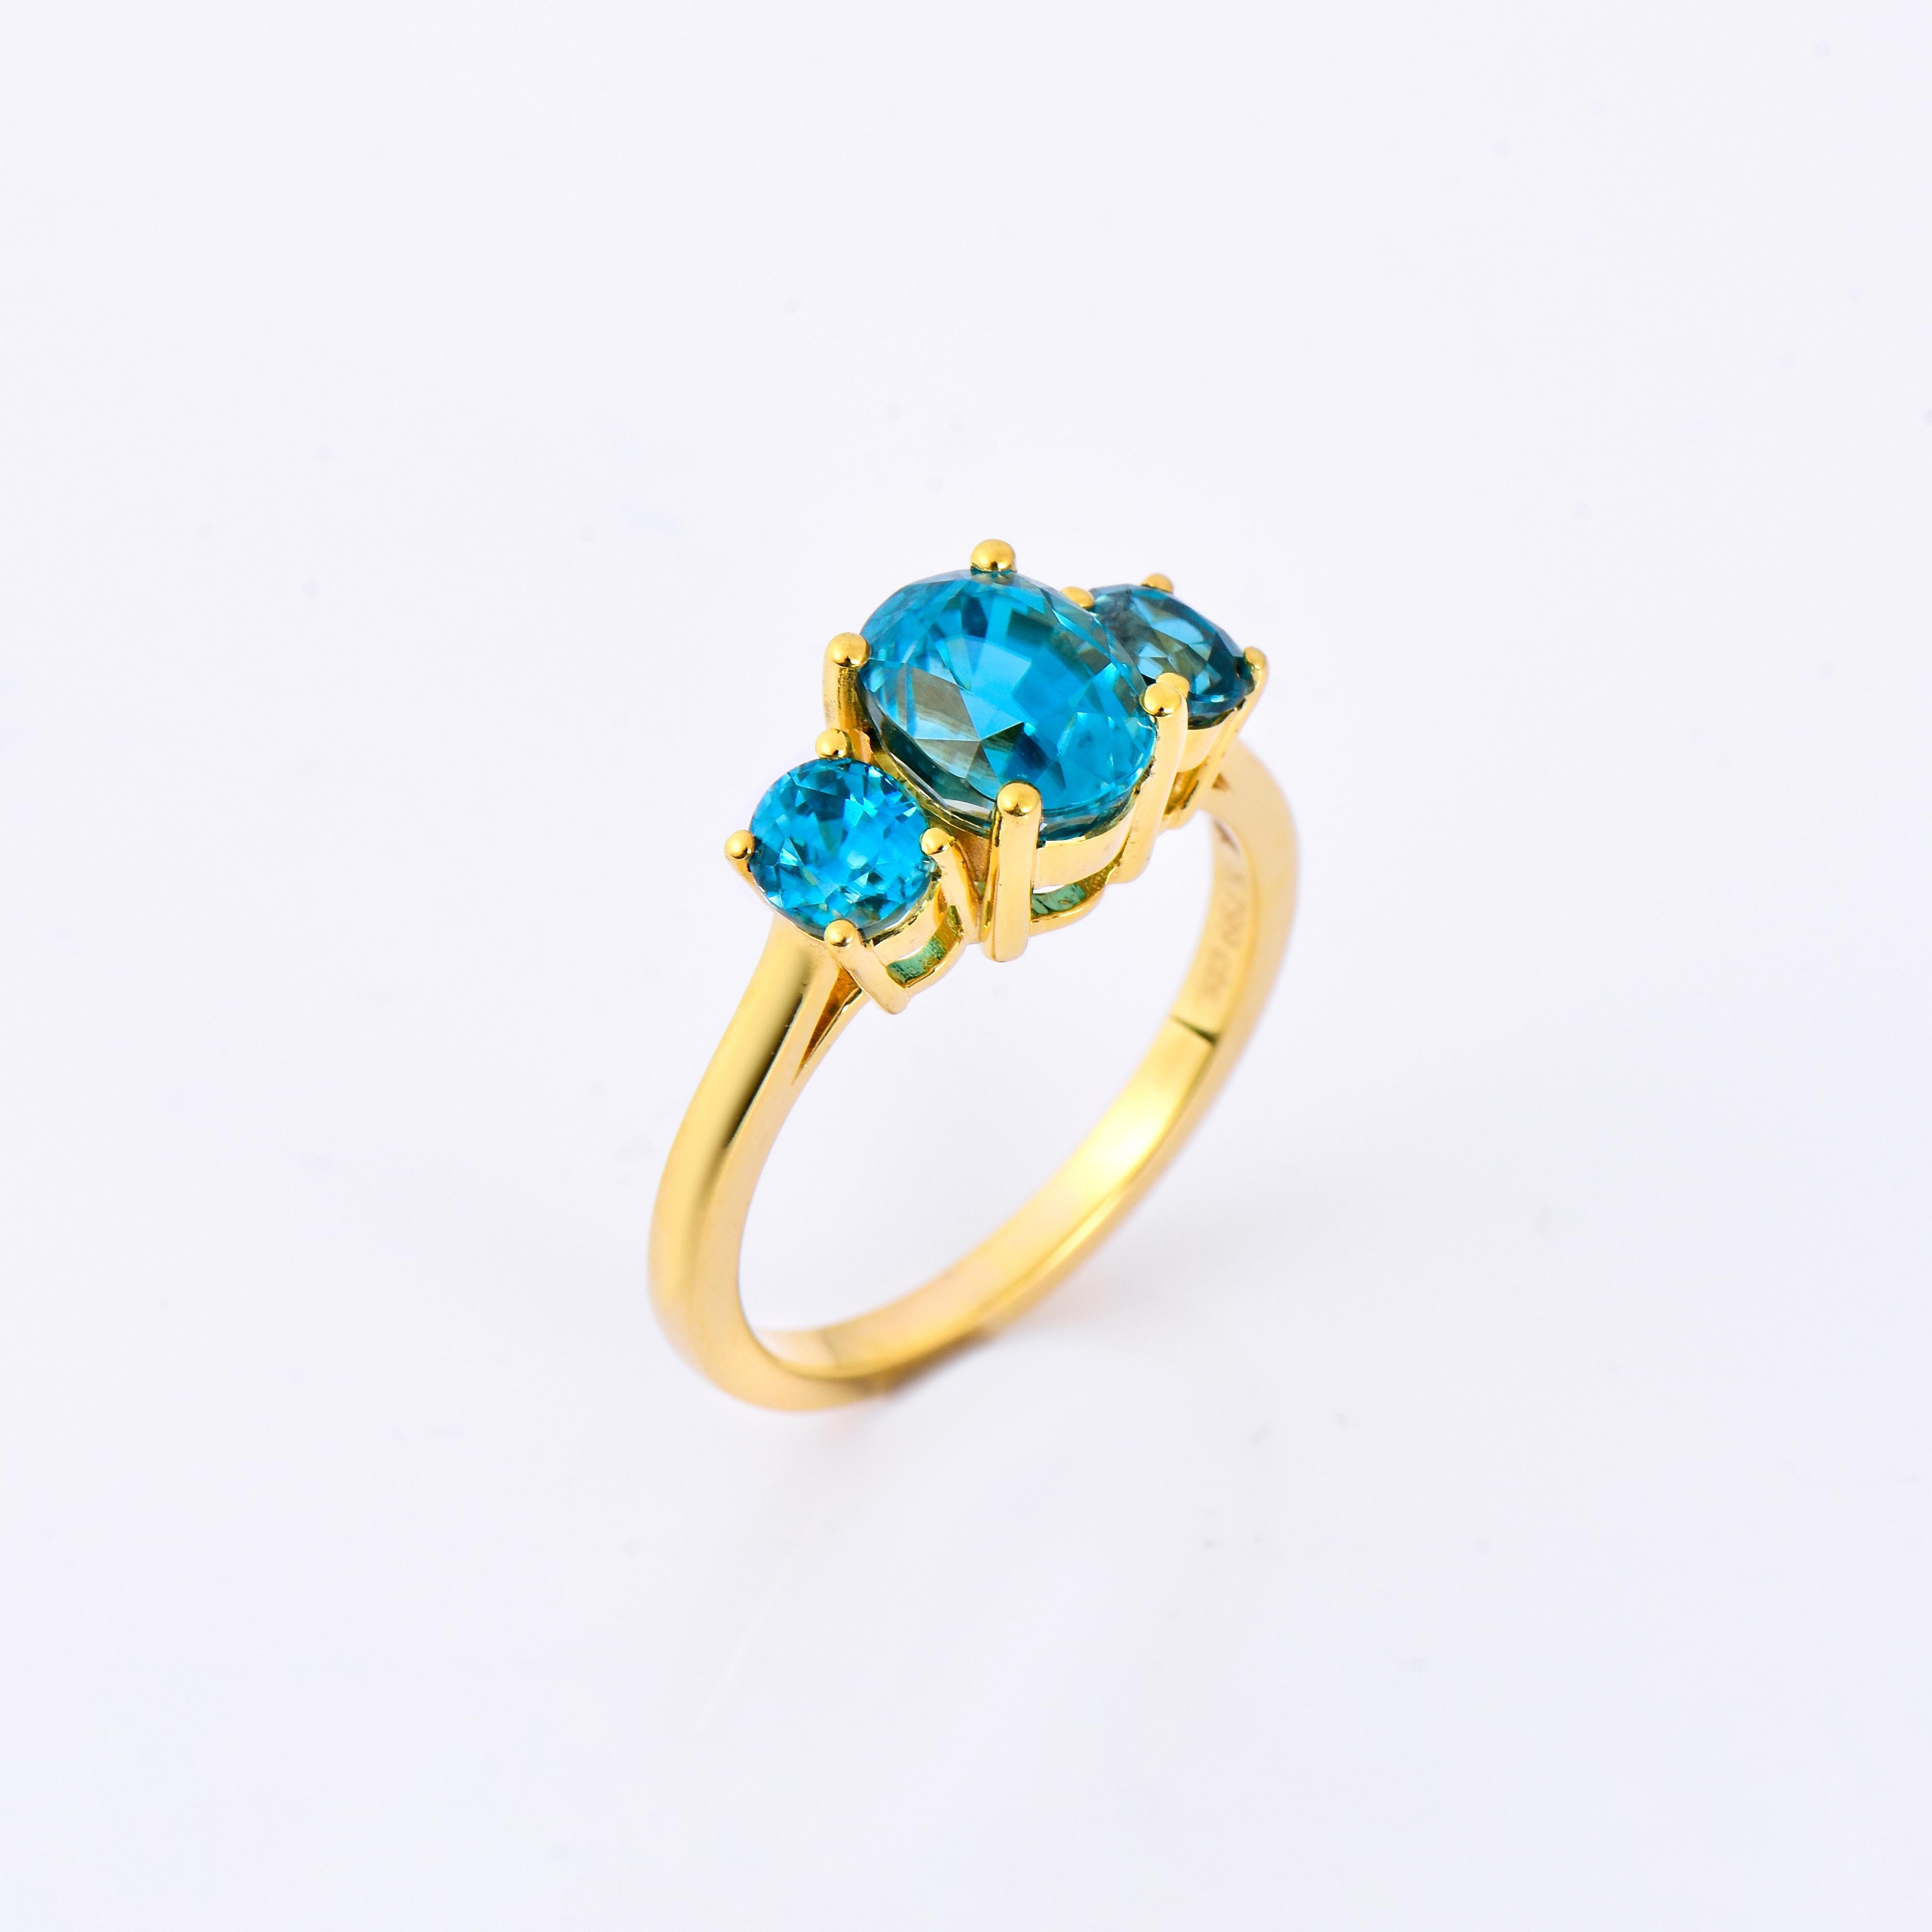 Orloff of Denmark; Ring aus 10 Karat Gold, besetzt mit drei natürlichen blauen Zirkonen aus Kambodscha mit einem Gesamtgewicht von 5,8 Karat.

Dieser exquisite Ring ist ein Zeugnis zeitloser Eleganz. Er besteht aus einem Trio faszinierender blauer